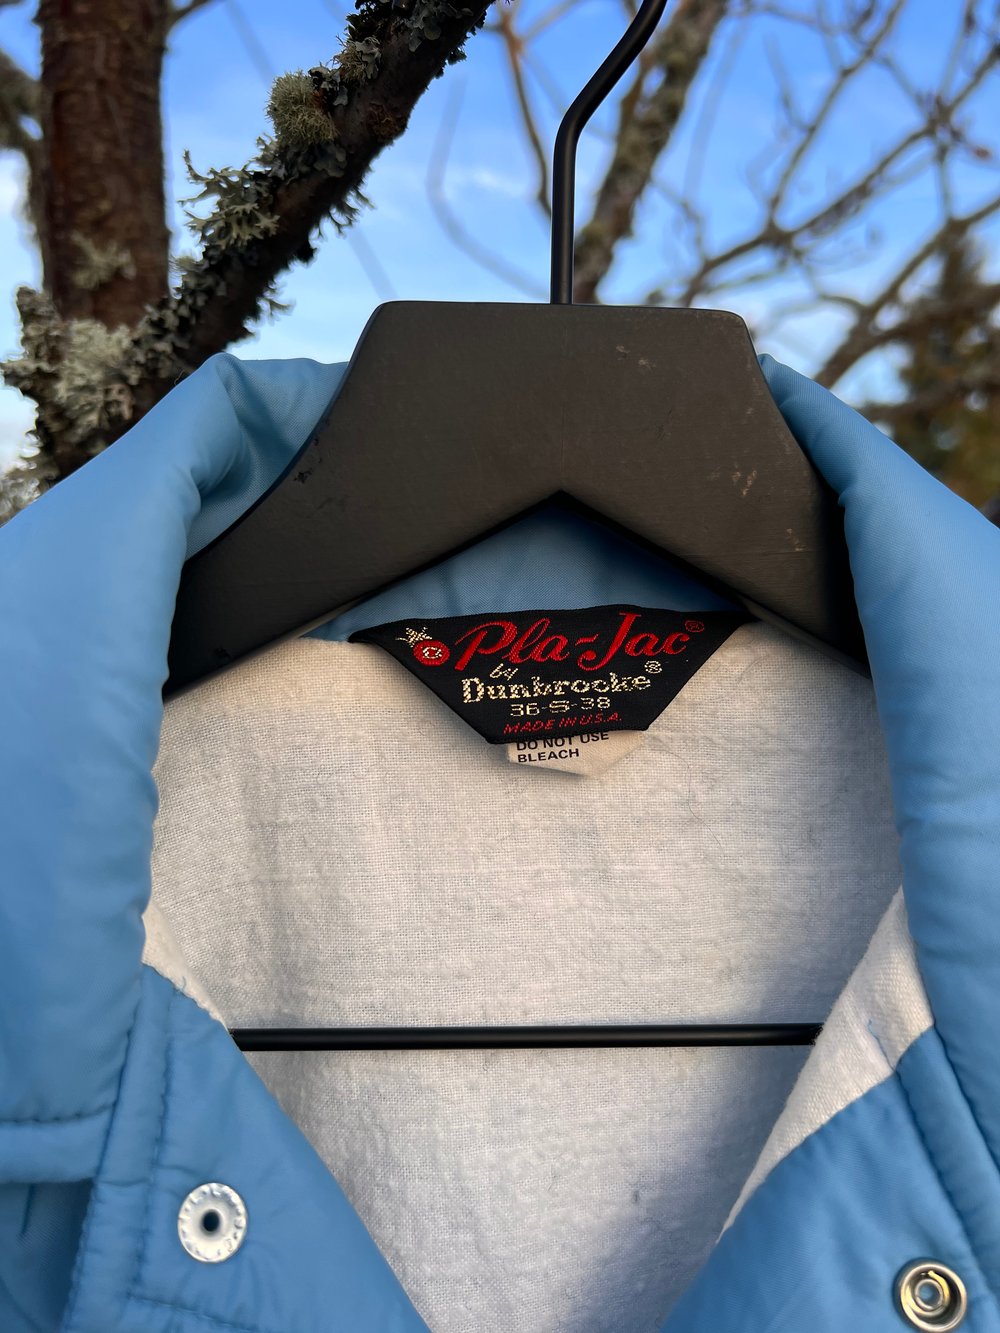 Vintage Soft Blue Oregon Skating Council Jacket (S)